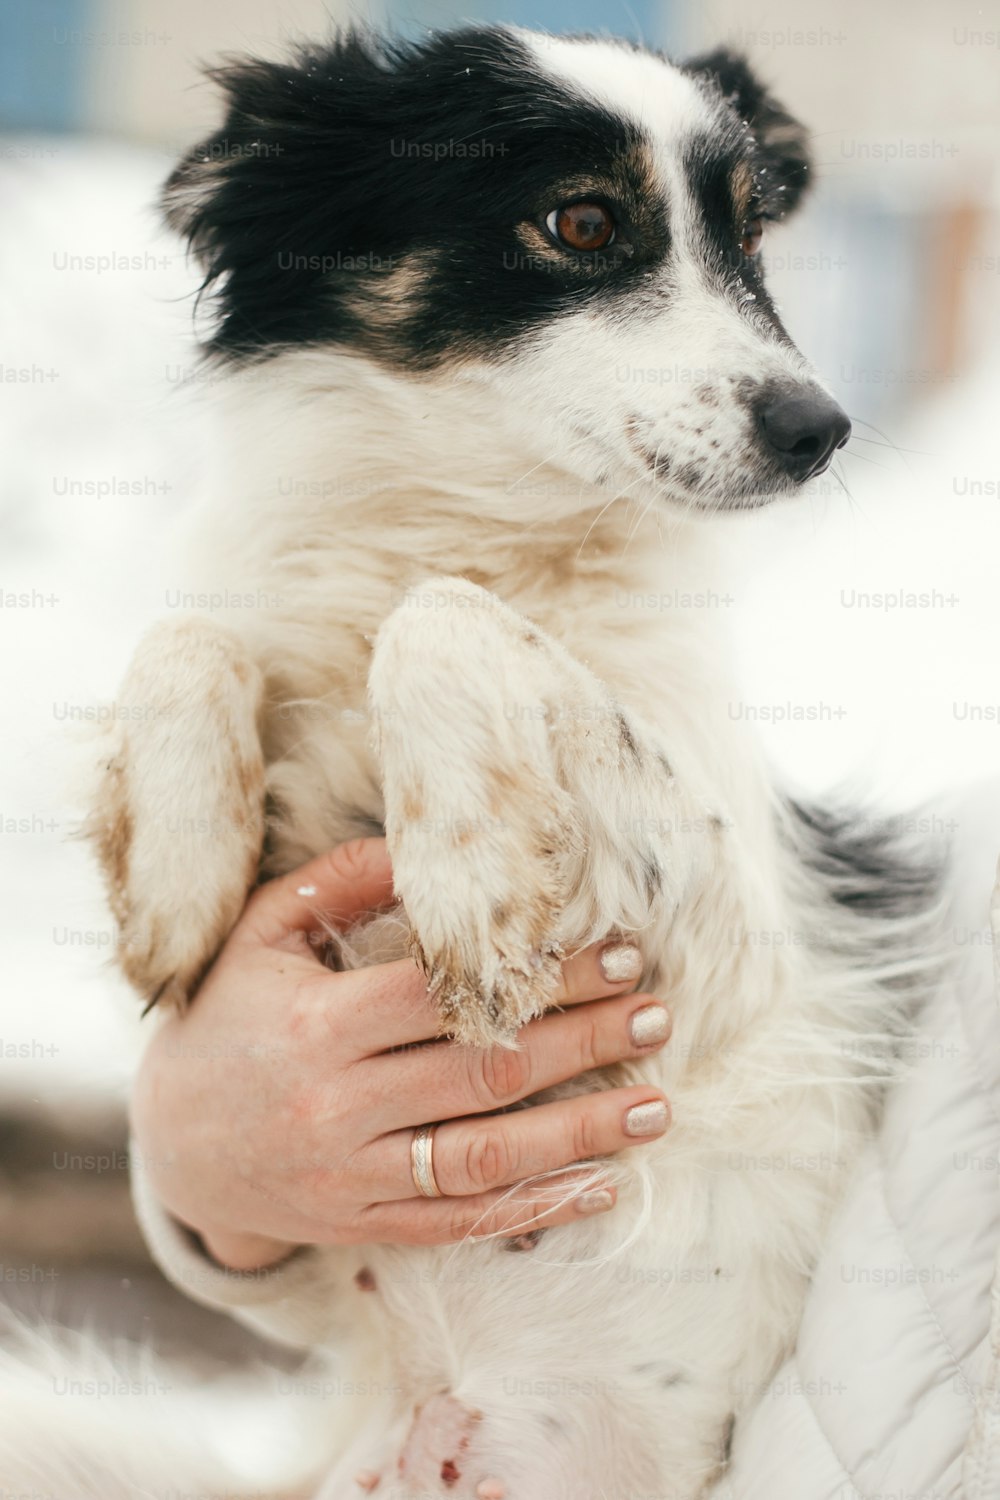 Lindo perro asustado en manos en persona en un parque invernal nevado. Gente abrazando a un perrito blanco y negro en un refugio. Concepto de adopción. Cachorro peludo y callejero